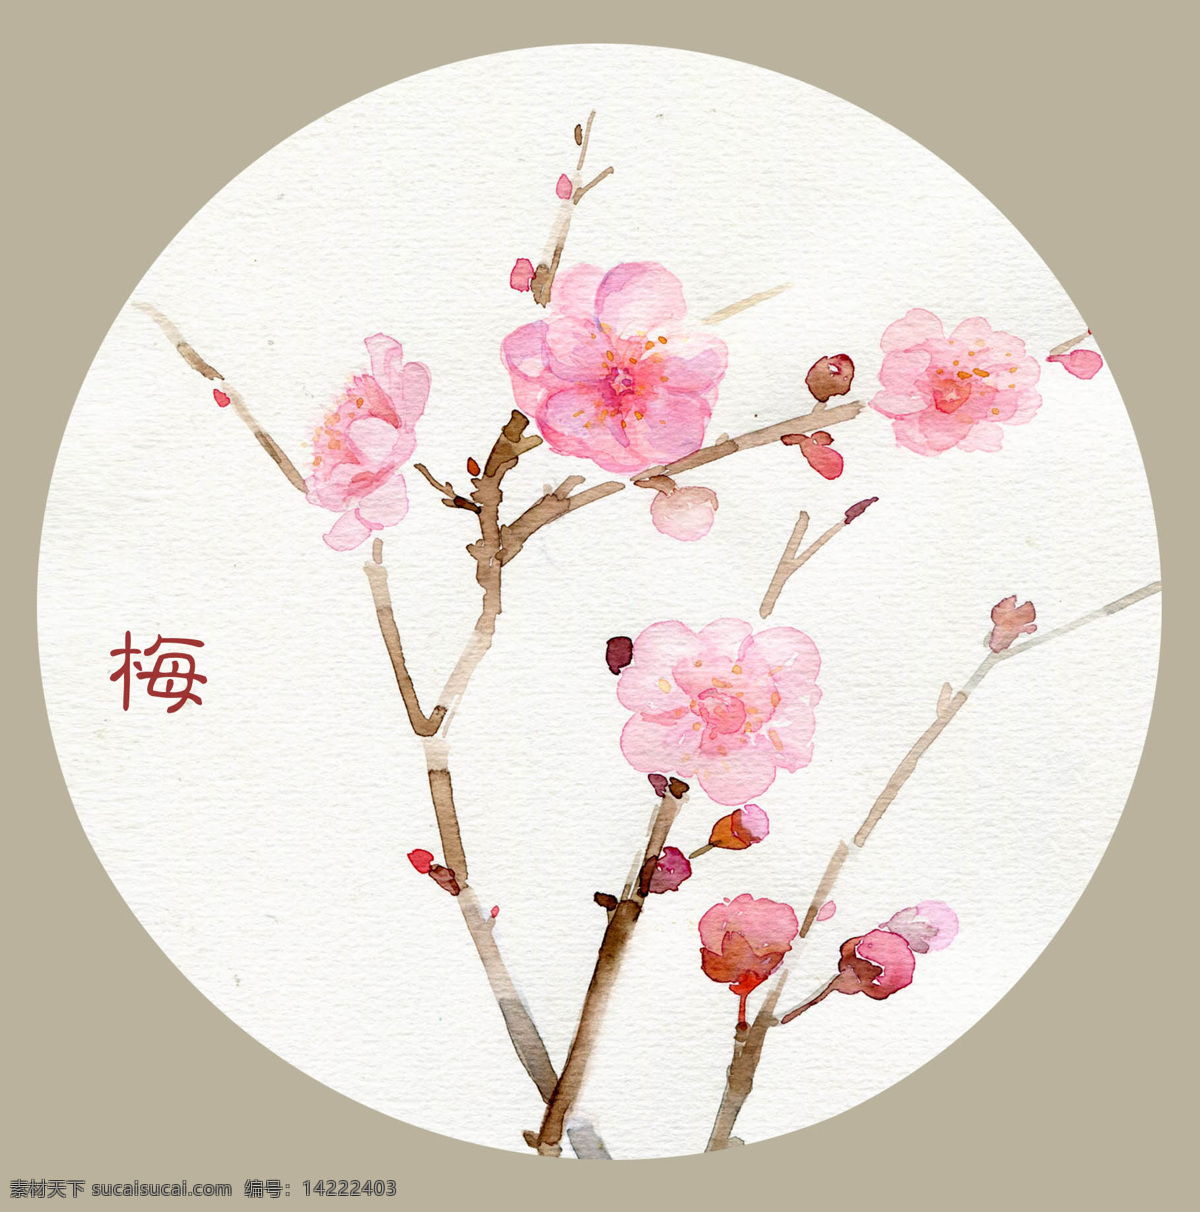 位图免费下载 服装图案 花朵 几何 位图 植物 中国风 面料图库 服装设计 图案花型